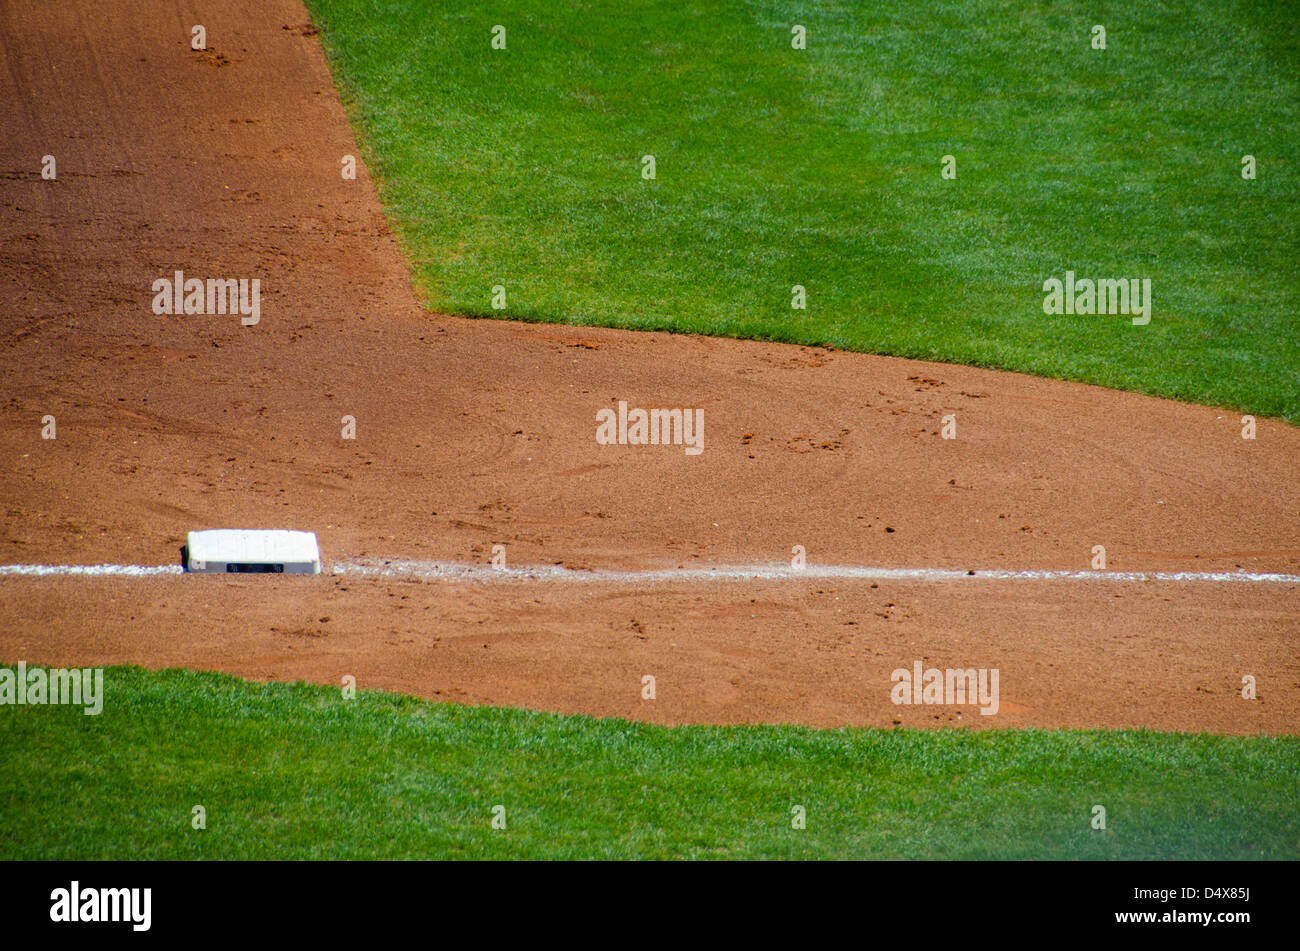 Abstrakte Hintergrundtextur von den braunen Dreck und grünen Rasen von einem professionellen Baseball-Feld mit Dritten Baseline und base Stockfoto